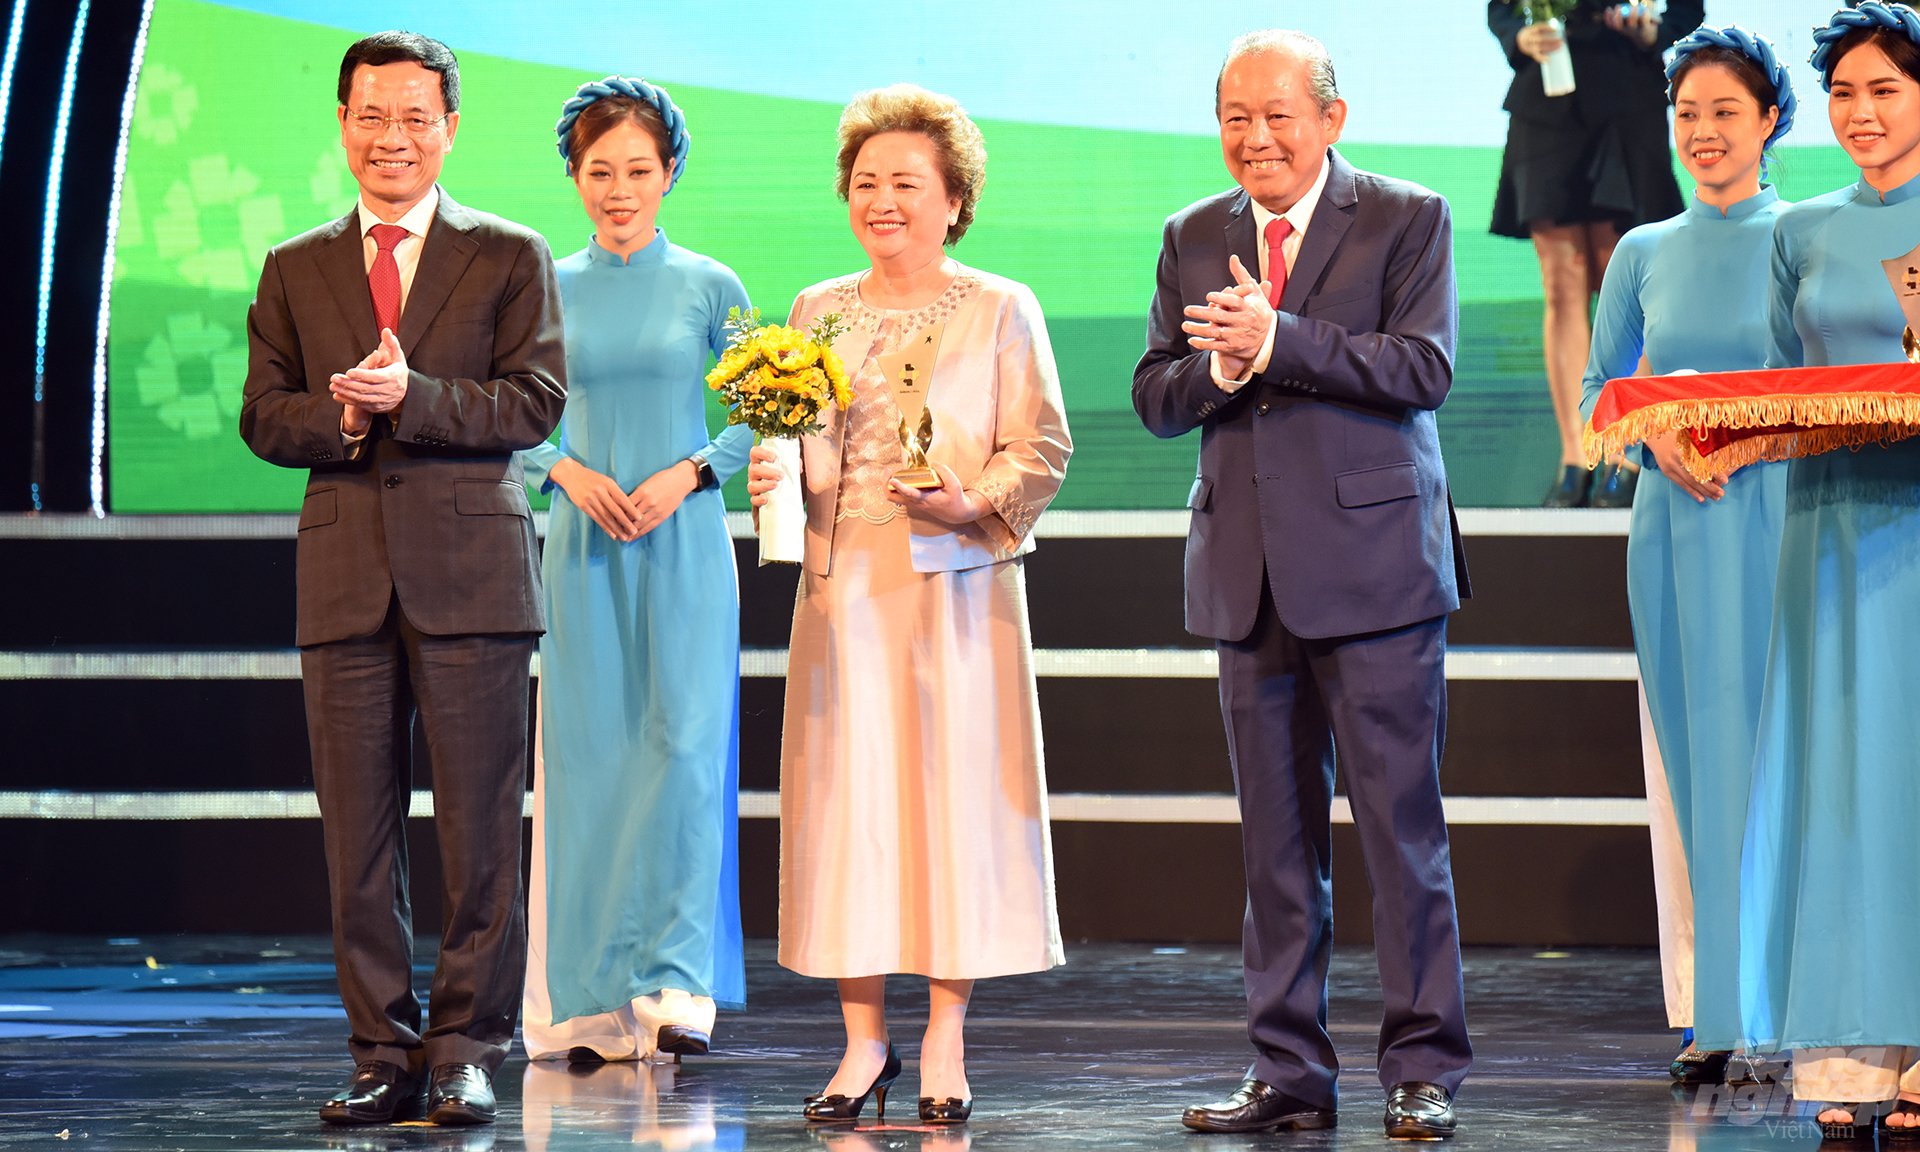 Bà Nguyễn Thị Nga, Chủ tịch Tập đoàn BRG nhận giải thưởng vinh danh Thương hiệu Quốc gia. Ảnh: Hùng Thắng.